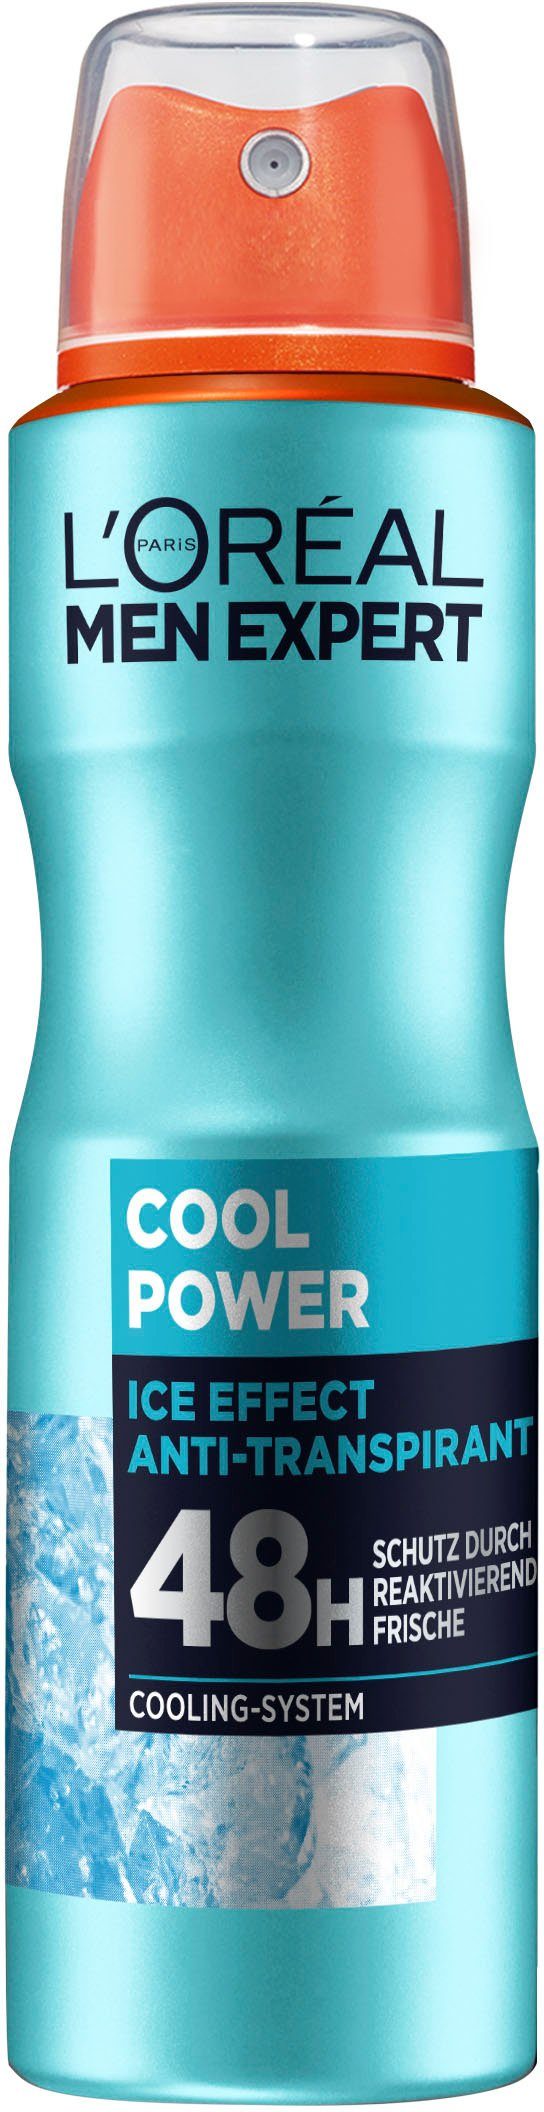 L'ORÉAL PARIS Deo-Spray Cool mit EXPERT MEN Power, 48H Cooling-Effekt